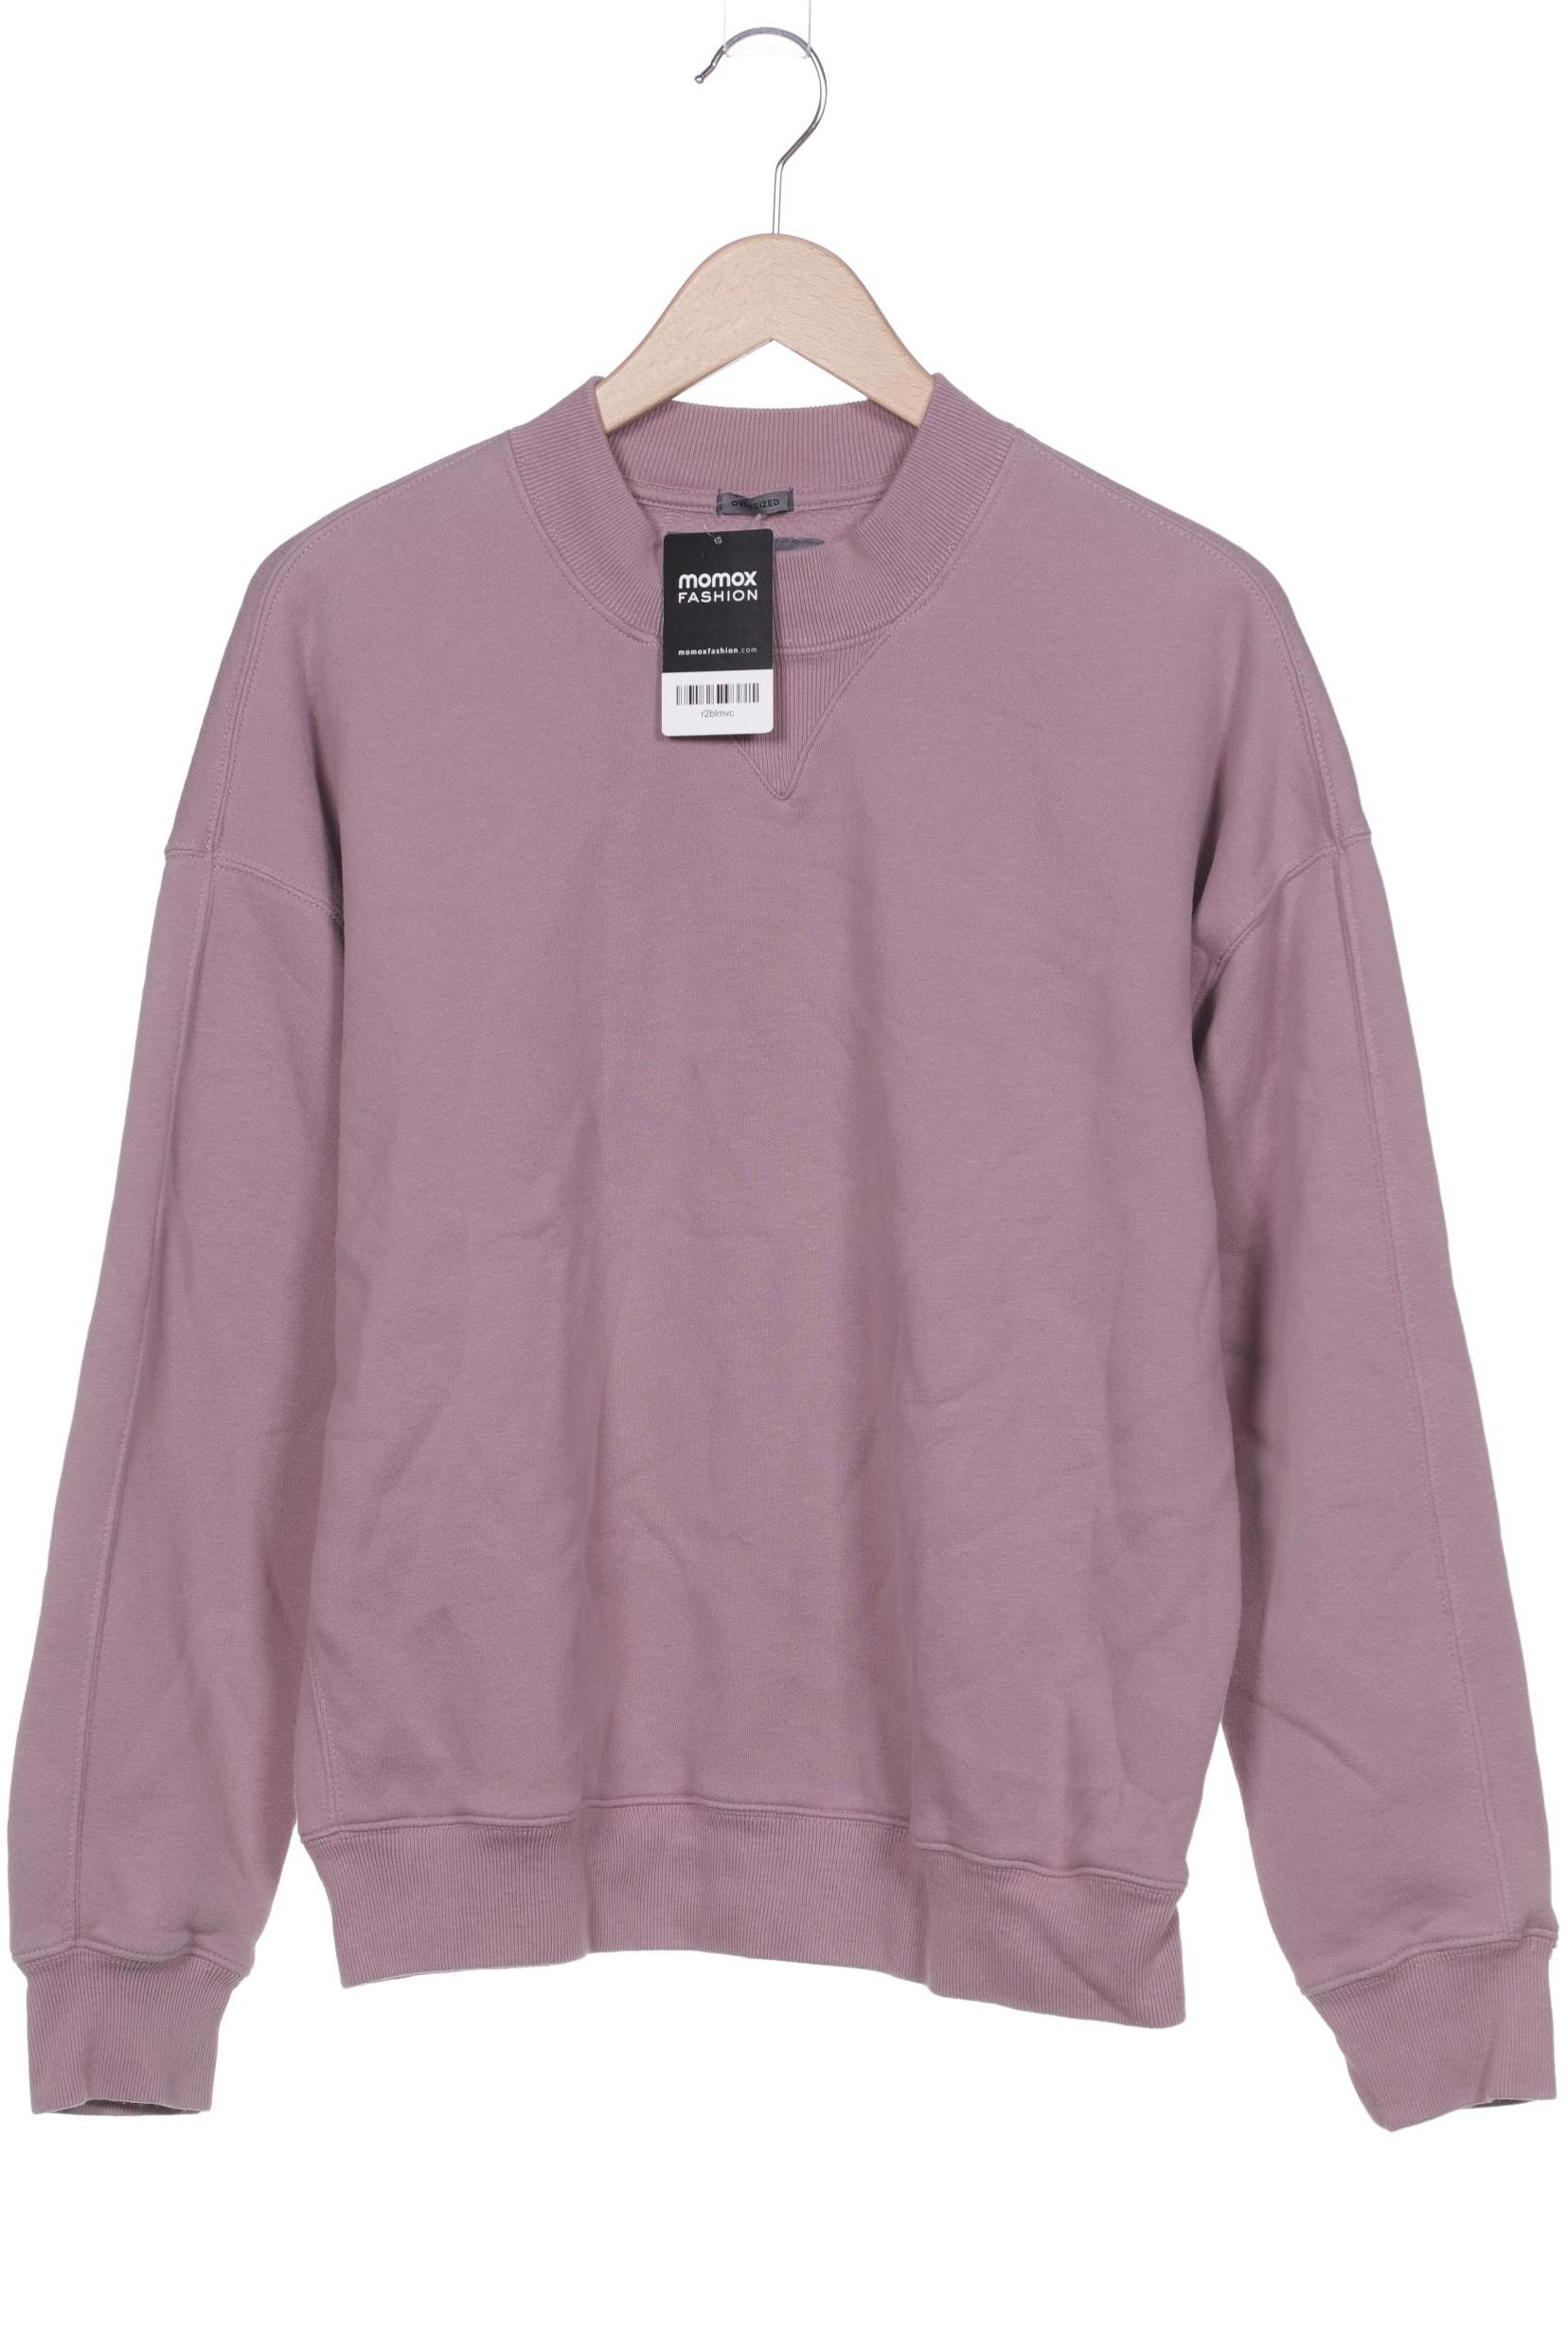 Abercrombie & Fitch Herren Sweatshirt, pink, Gr. 46 von Abercrombie & Fitch